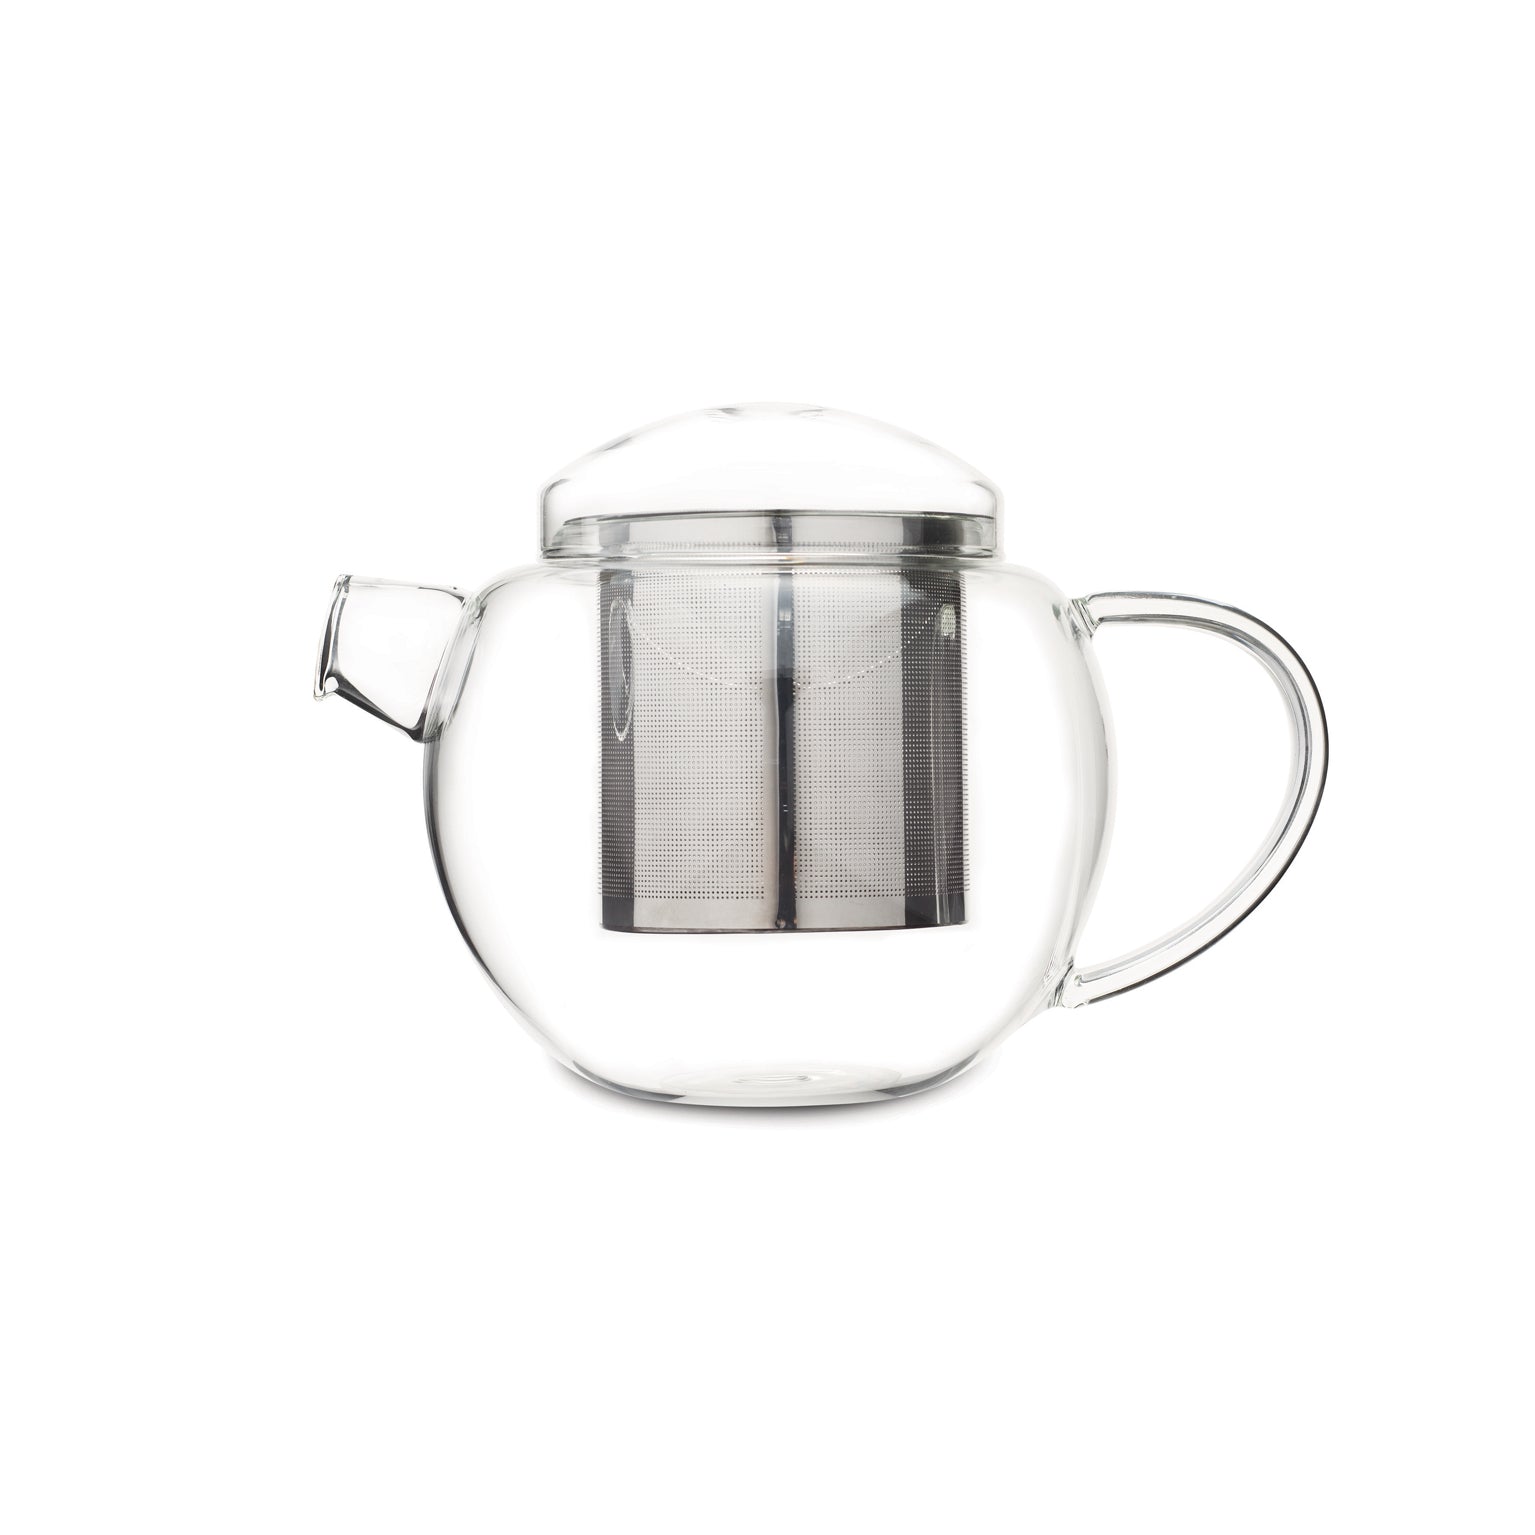 קנקן תה מזכוכית עם בית חליטה 900 מ"ל מקולקציית לוברמיקס פרו תה - Loveramics Pro Tea